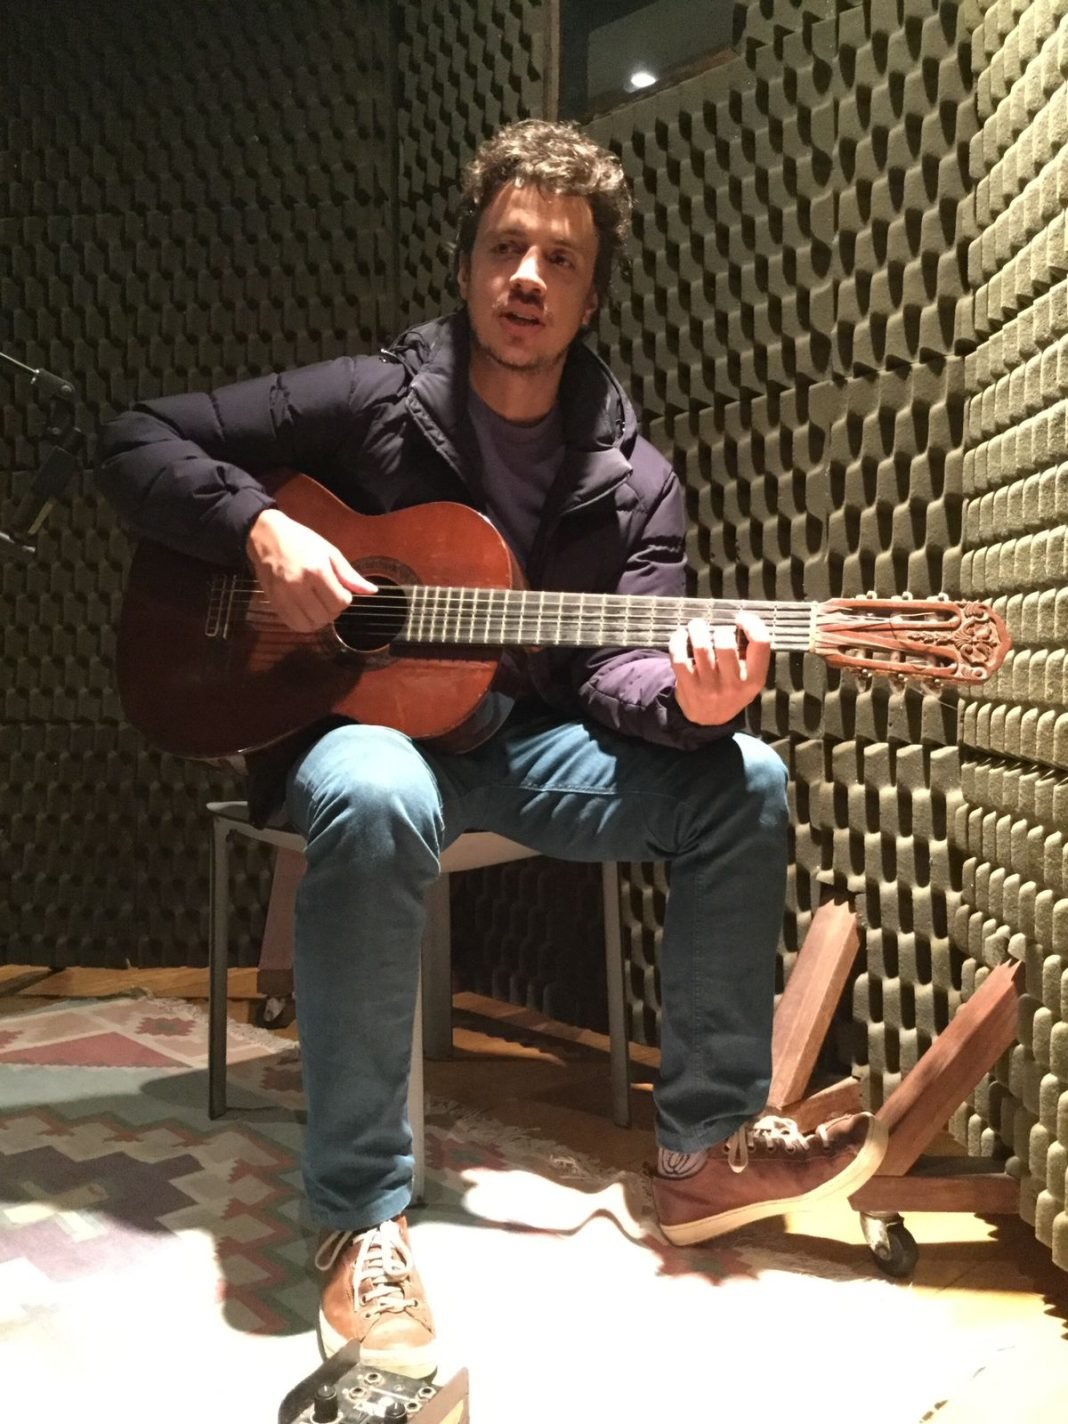 Violão de Guto Graça Melo usado por Fi Bueno na gravação da faixa 